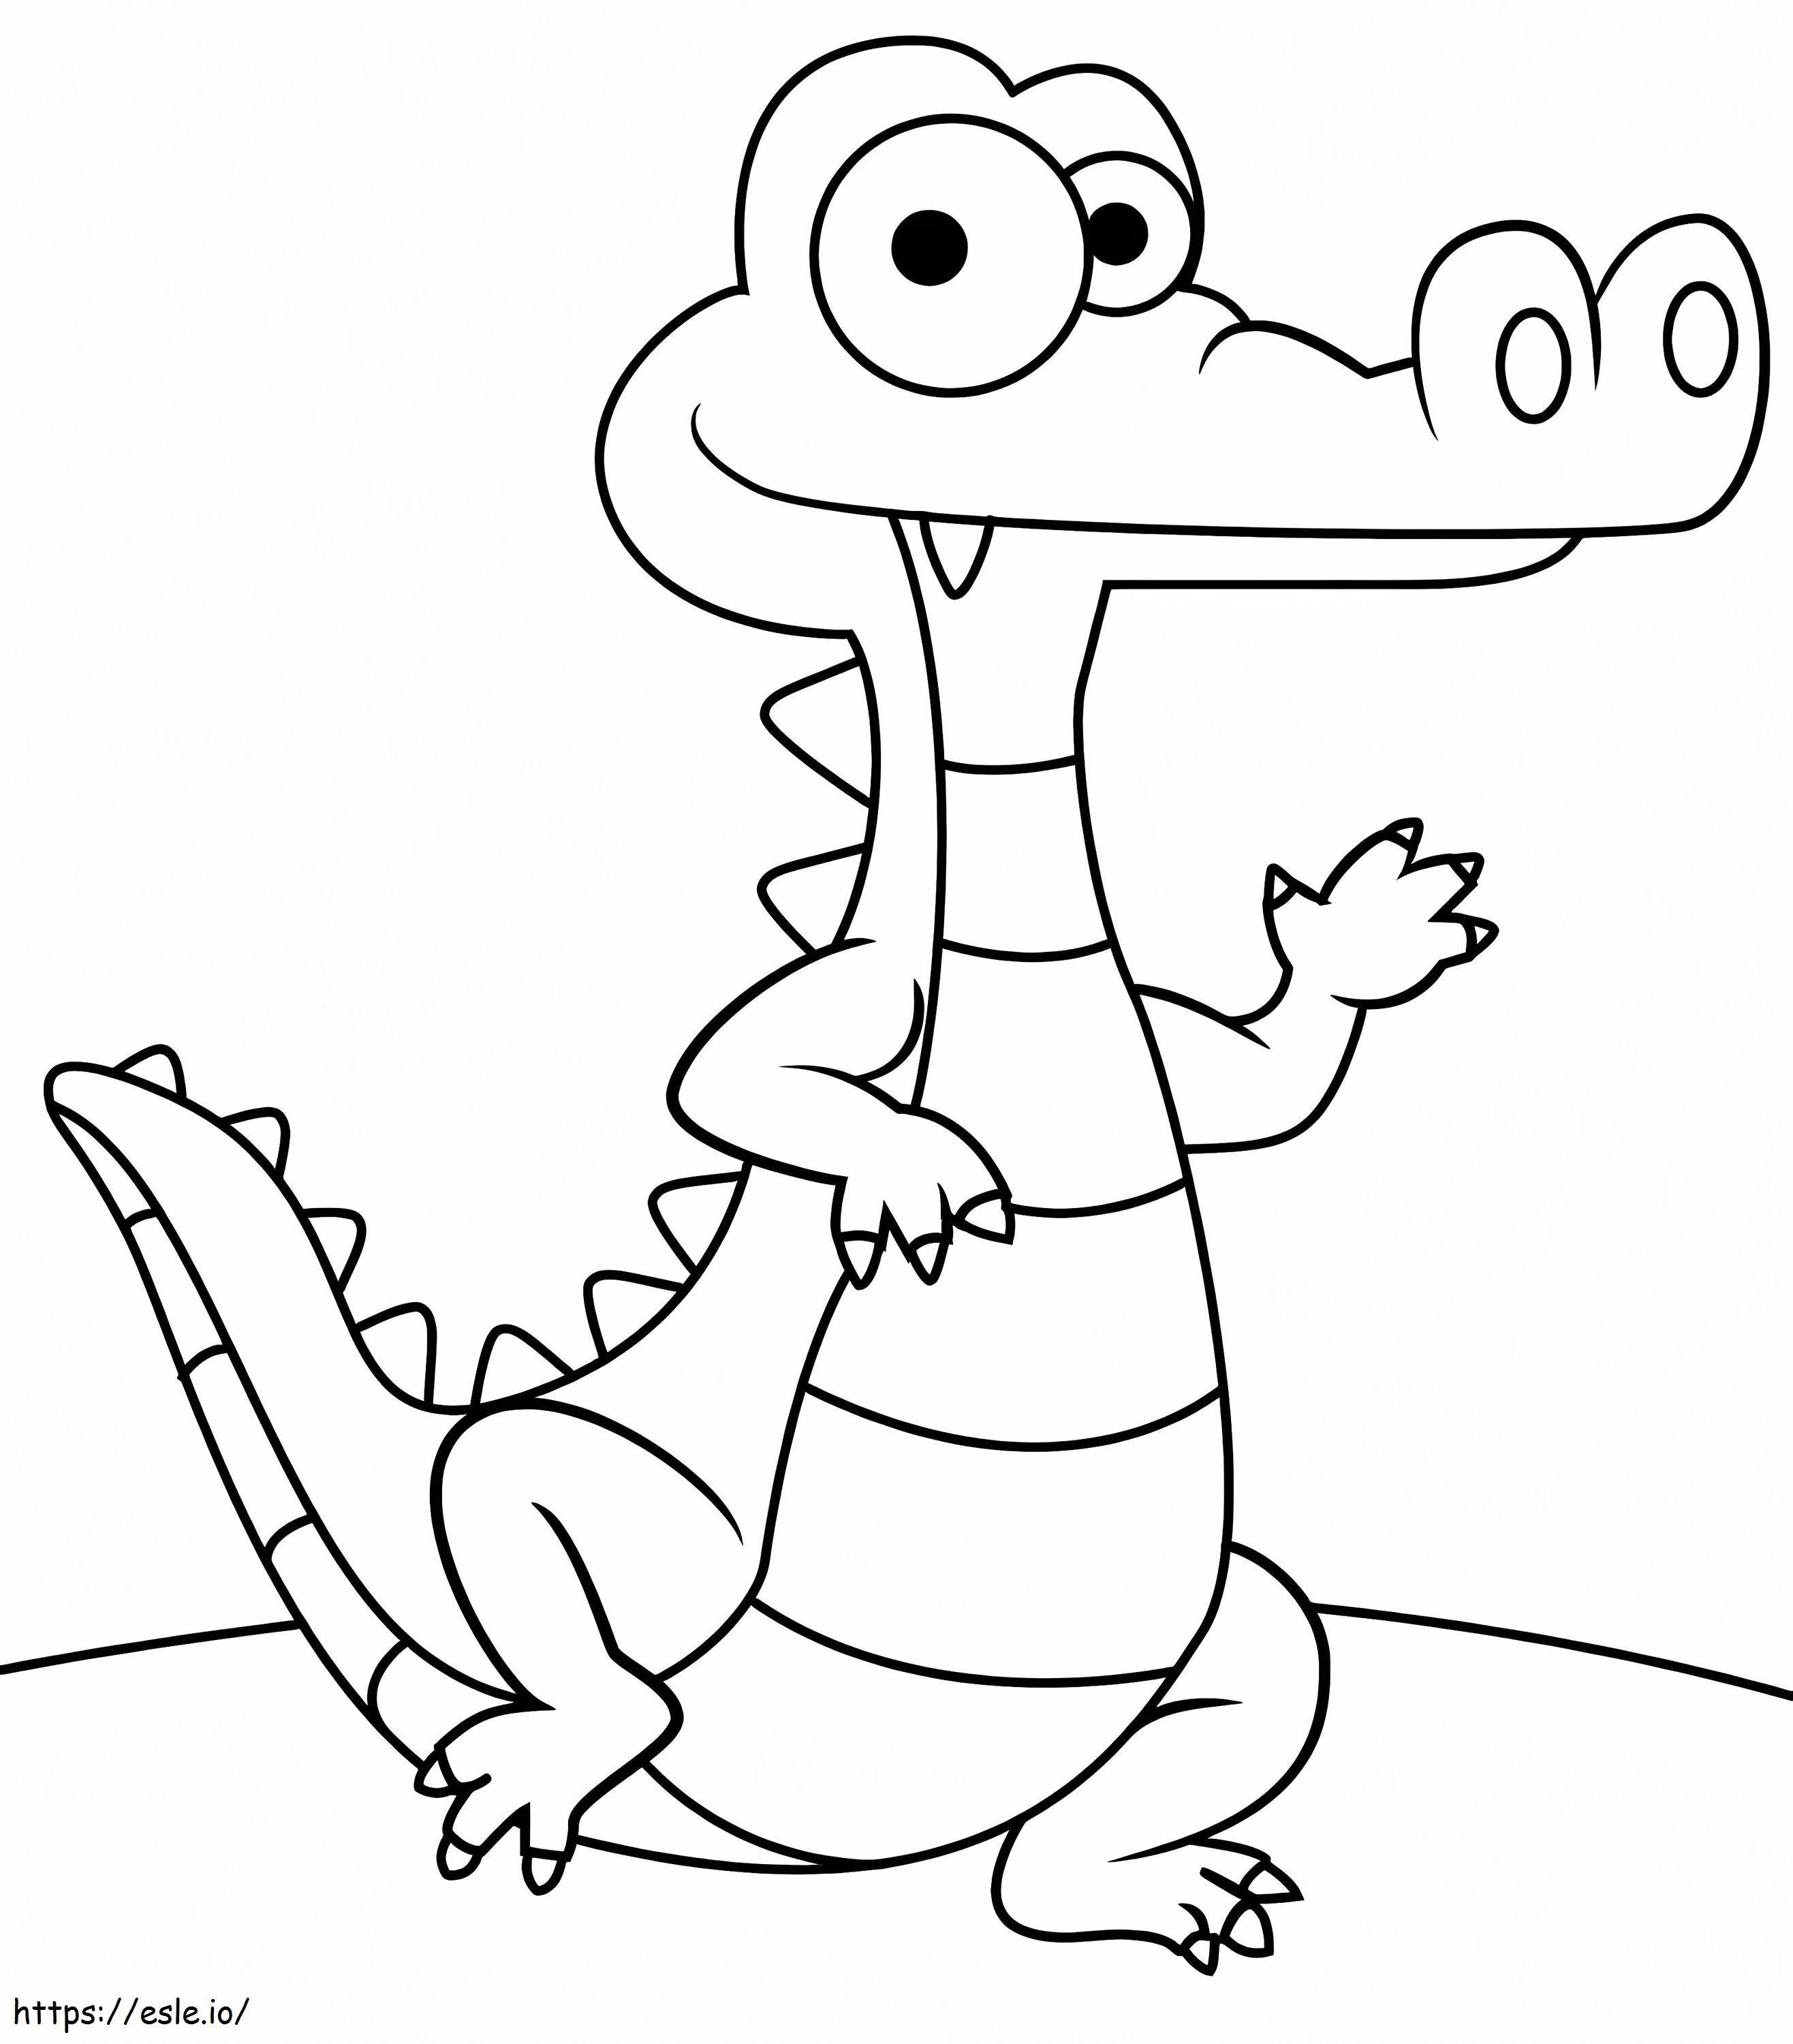 Kleiner Alligator ausmalbilder